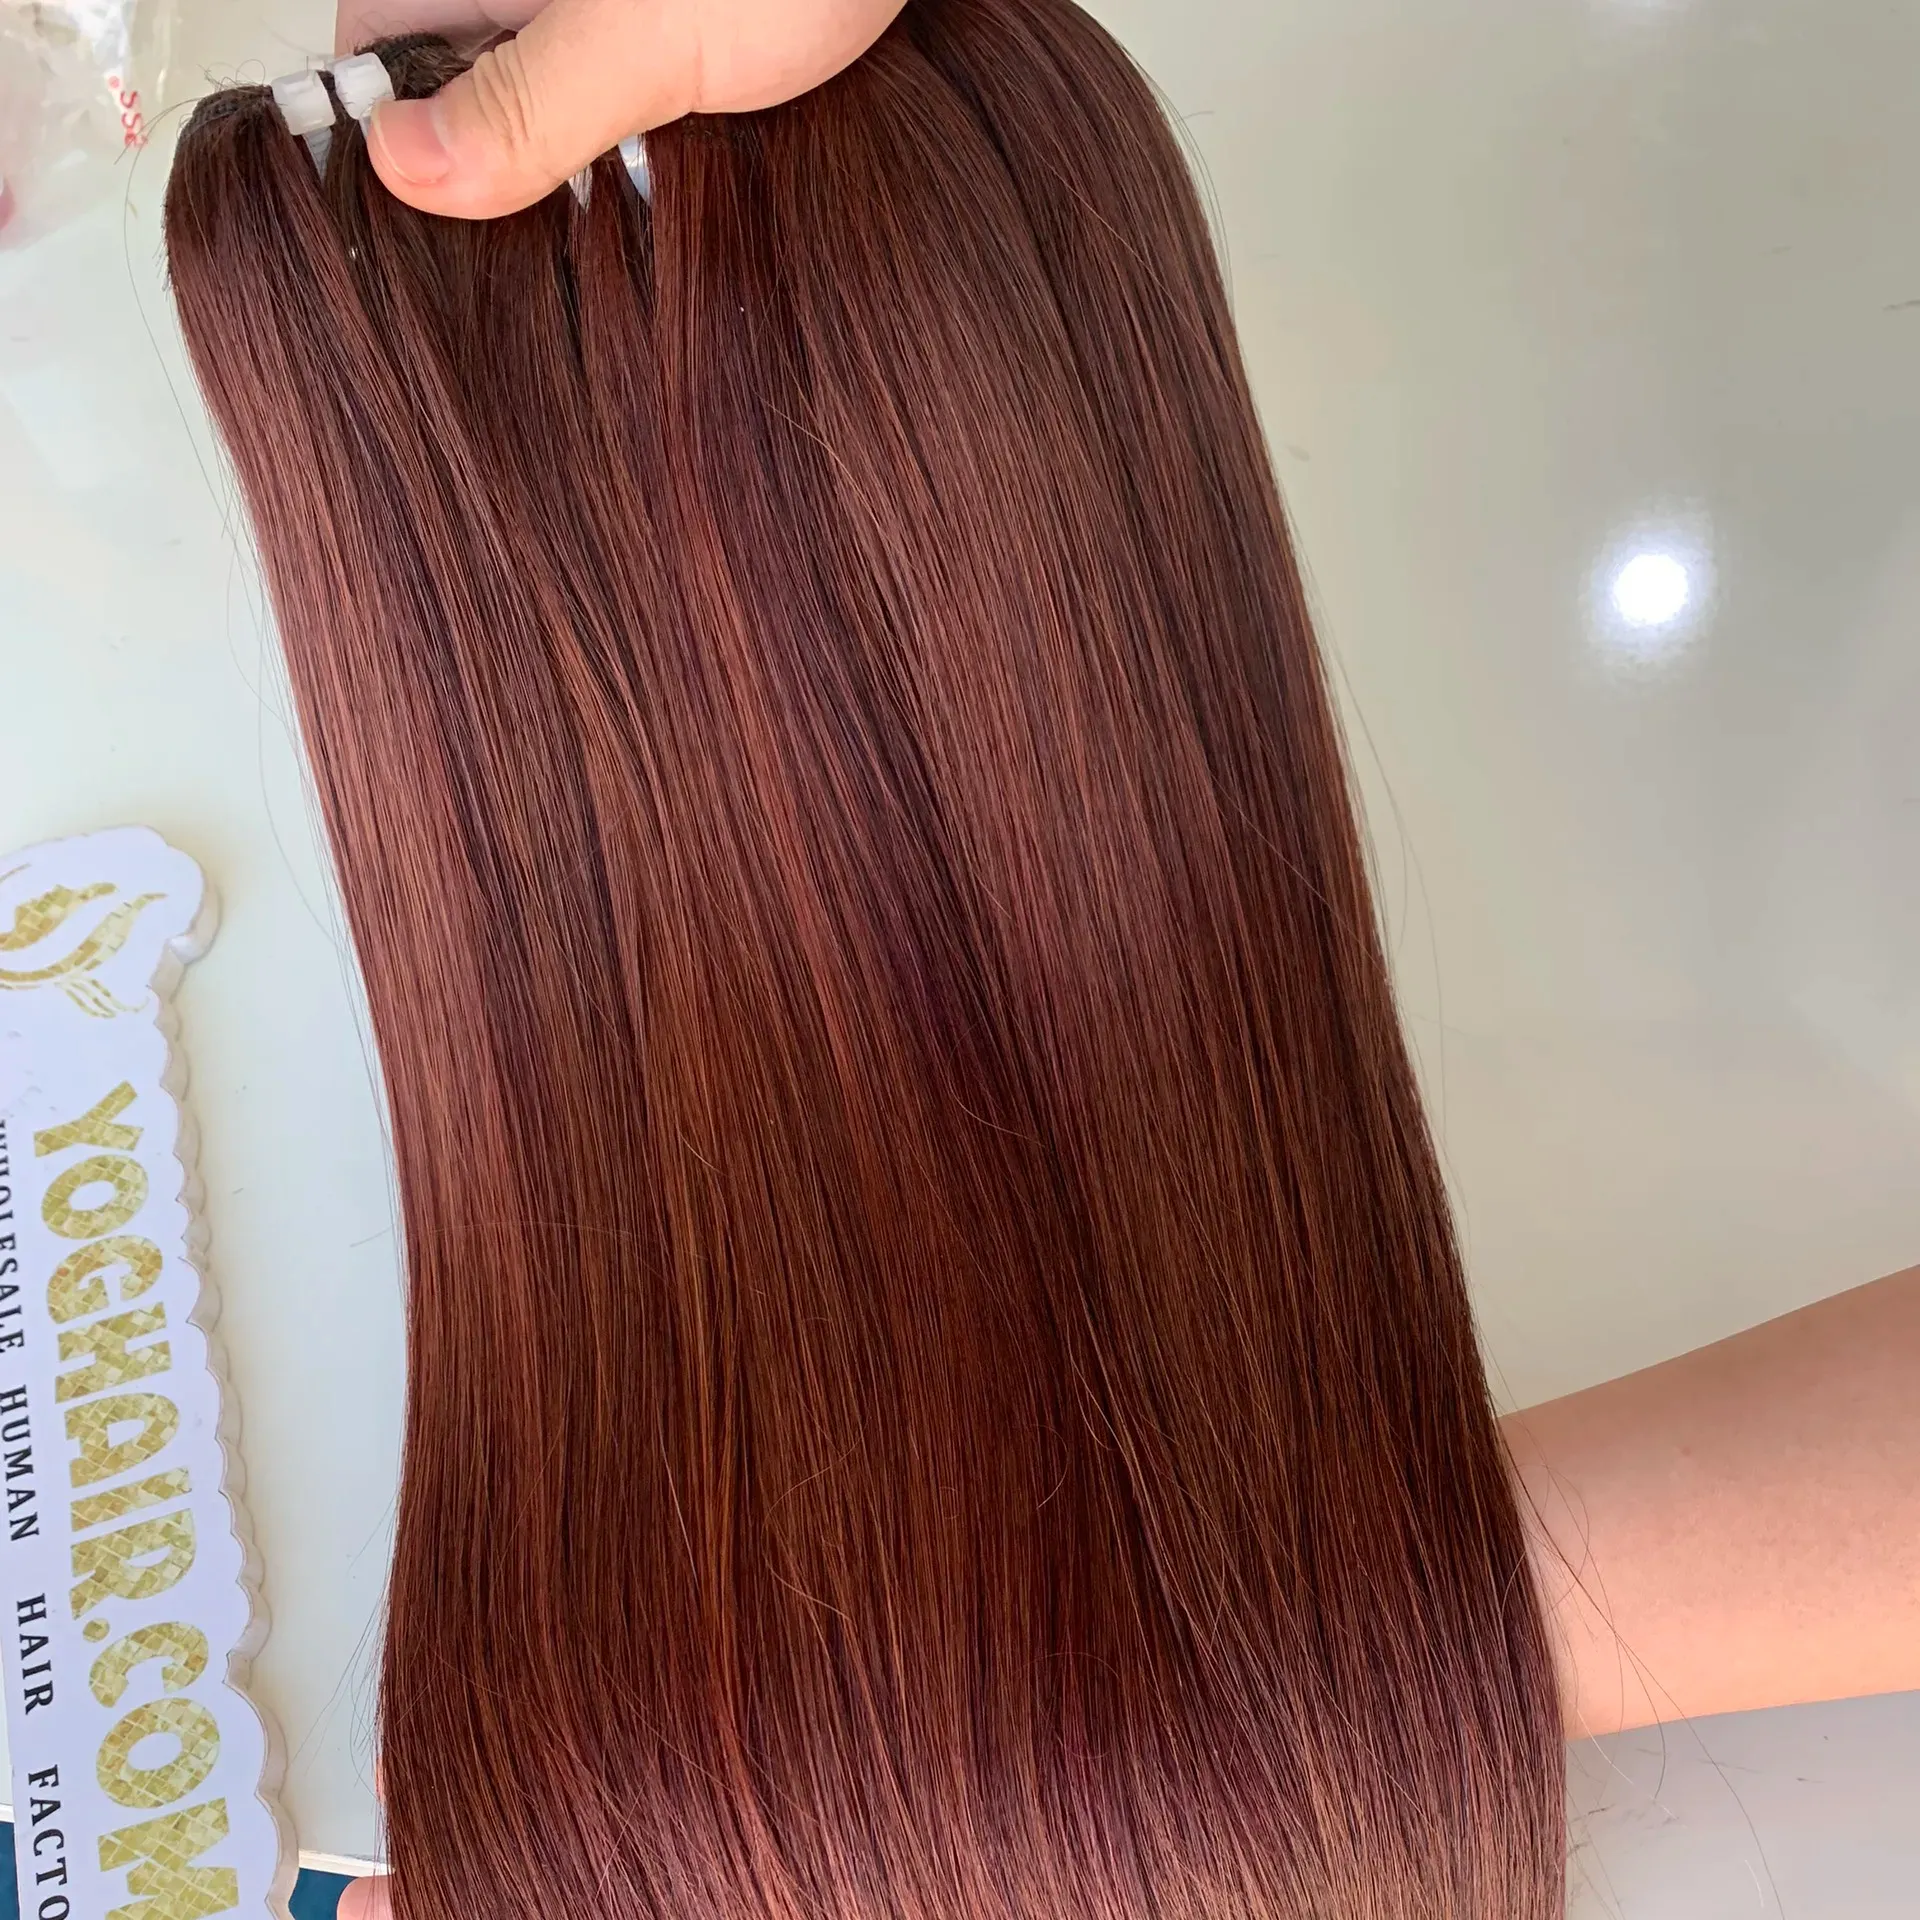 Волосы для наращивания, длинные прямые 100% вьетнамские человеческие волосы, все варианты по оптовой цене от фабрики Yoghair, быстрая доставка